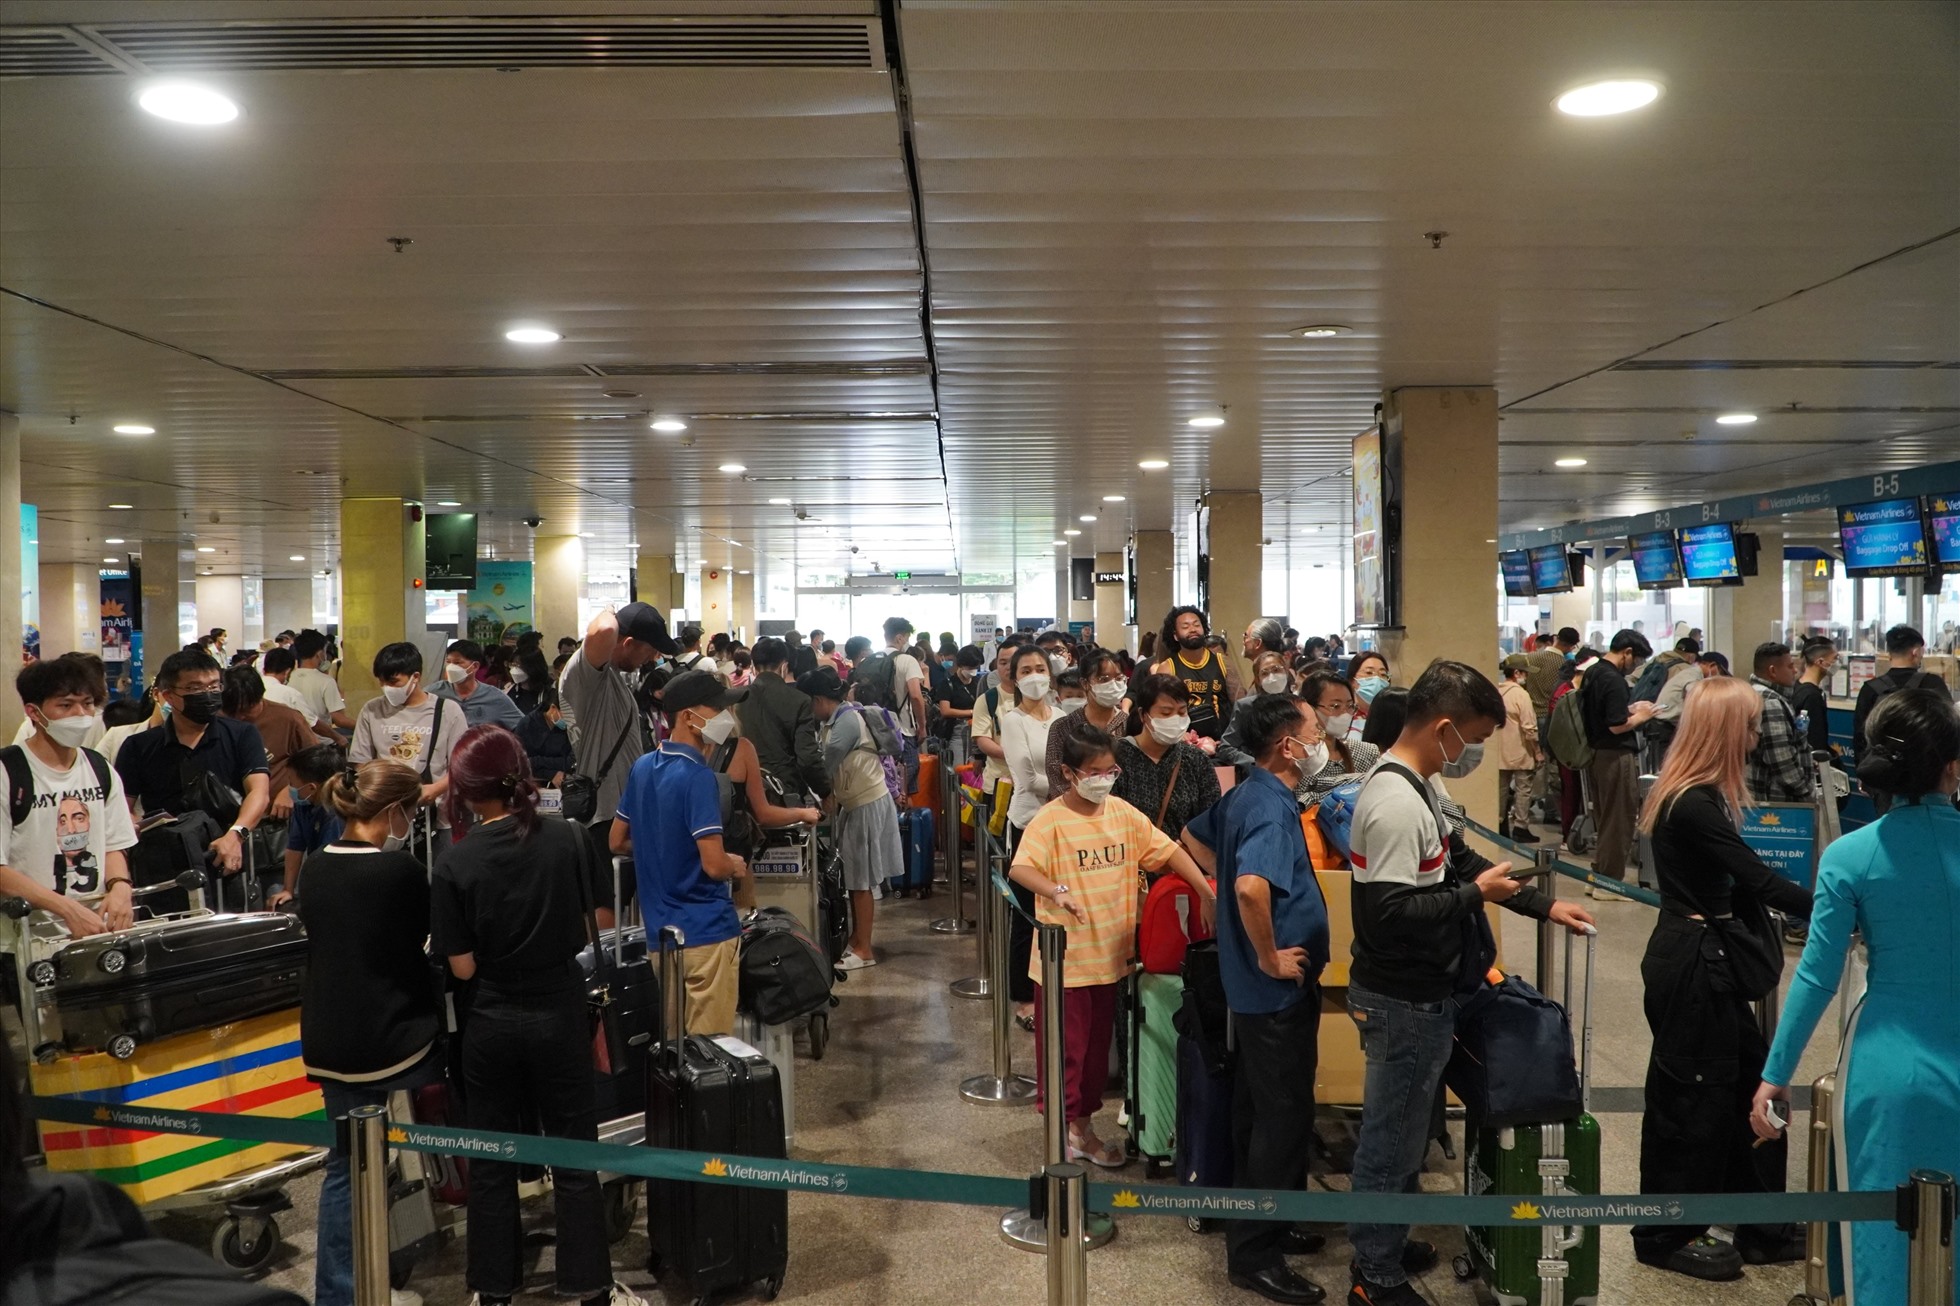 Khách đông nghịt trước các quầy thủ trong sân bay Tân Sơn Nhất. Ngày 28 Tết khách qua sân bay Tân Sơn Nhất ước tính gần 131.000 người, với 895 chuyến bay được khai thác. Đây ngày khách đông nhất từ khi Tân Sơn Nhất vào cao điểm phục vụ đi lại Tết Nguyên đán 2023.